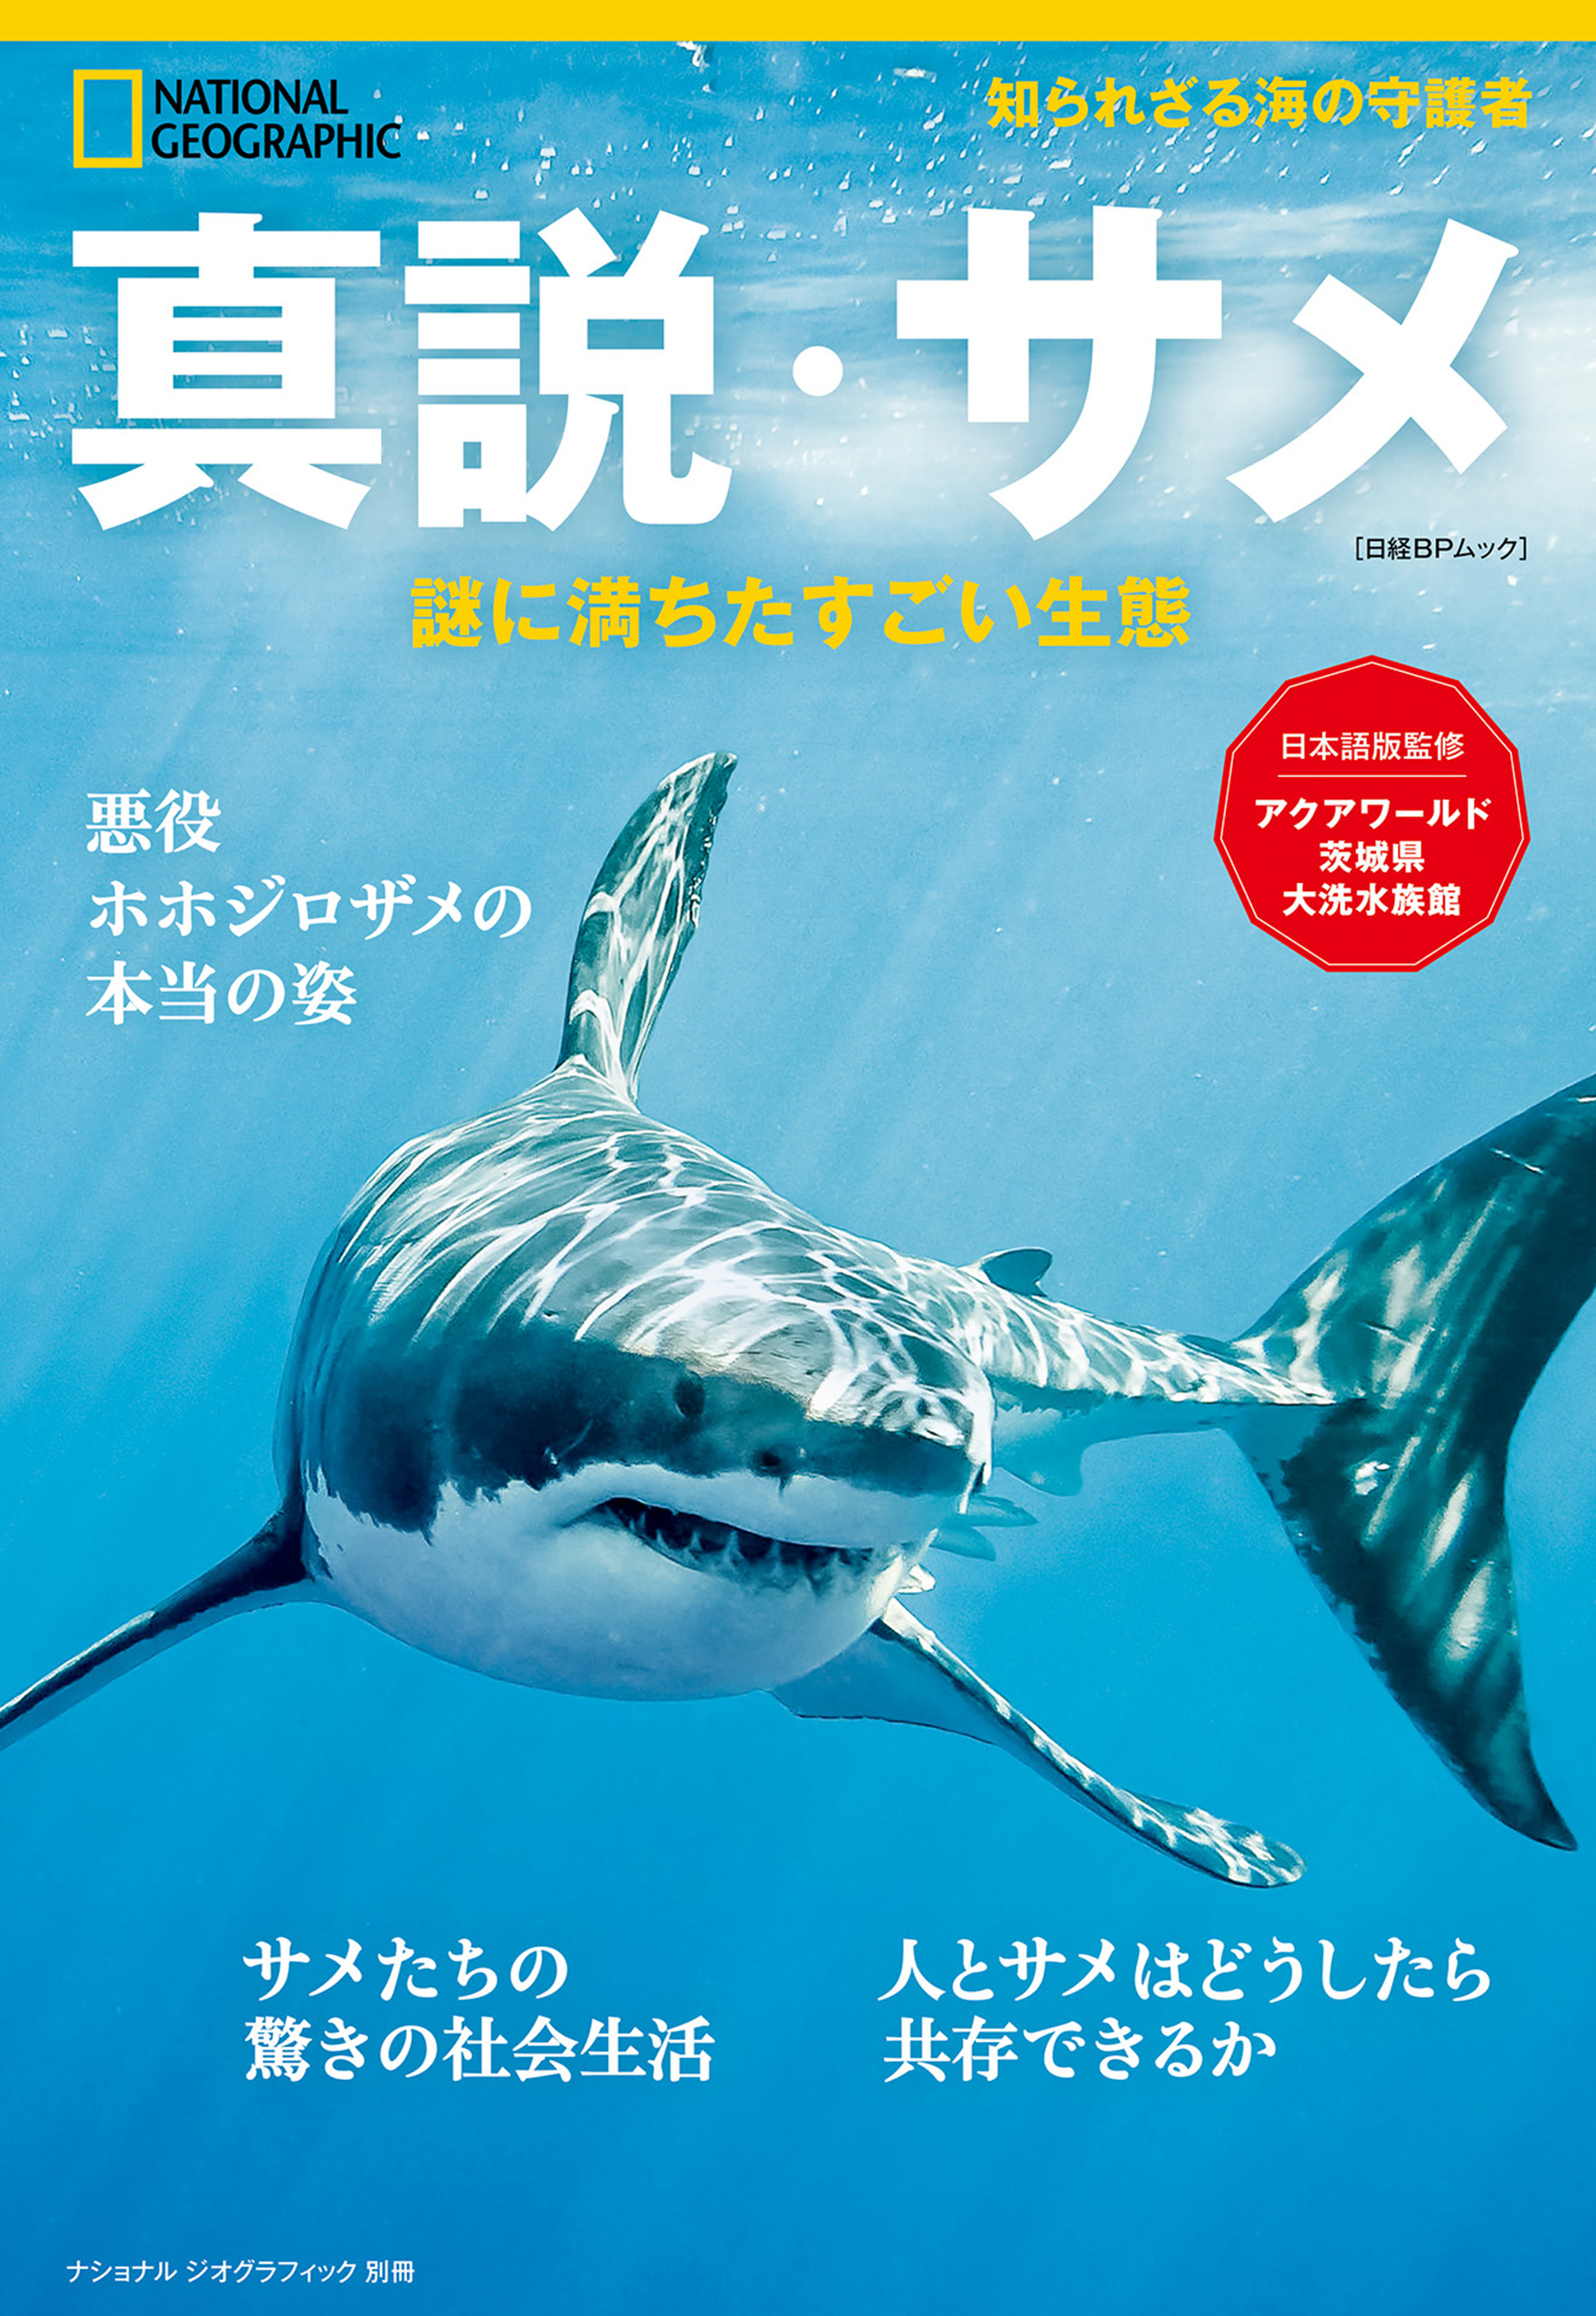 真説・サメ 謎に満ちたすごい生態 - ナショナルジオグラフィック